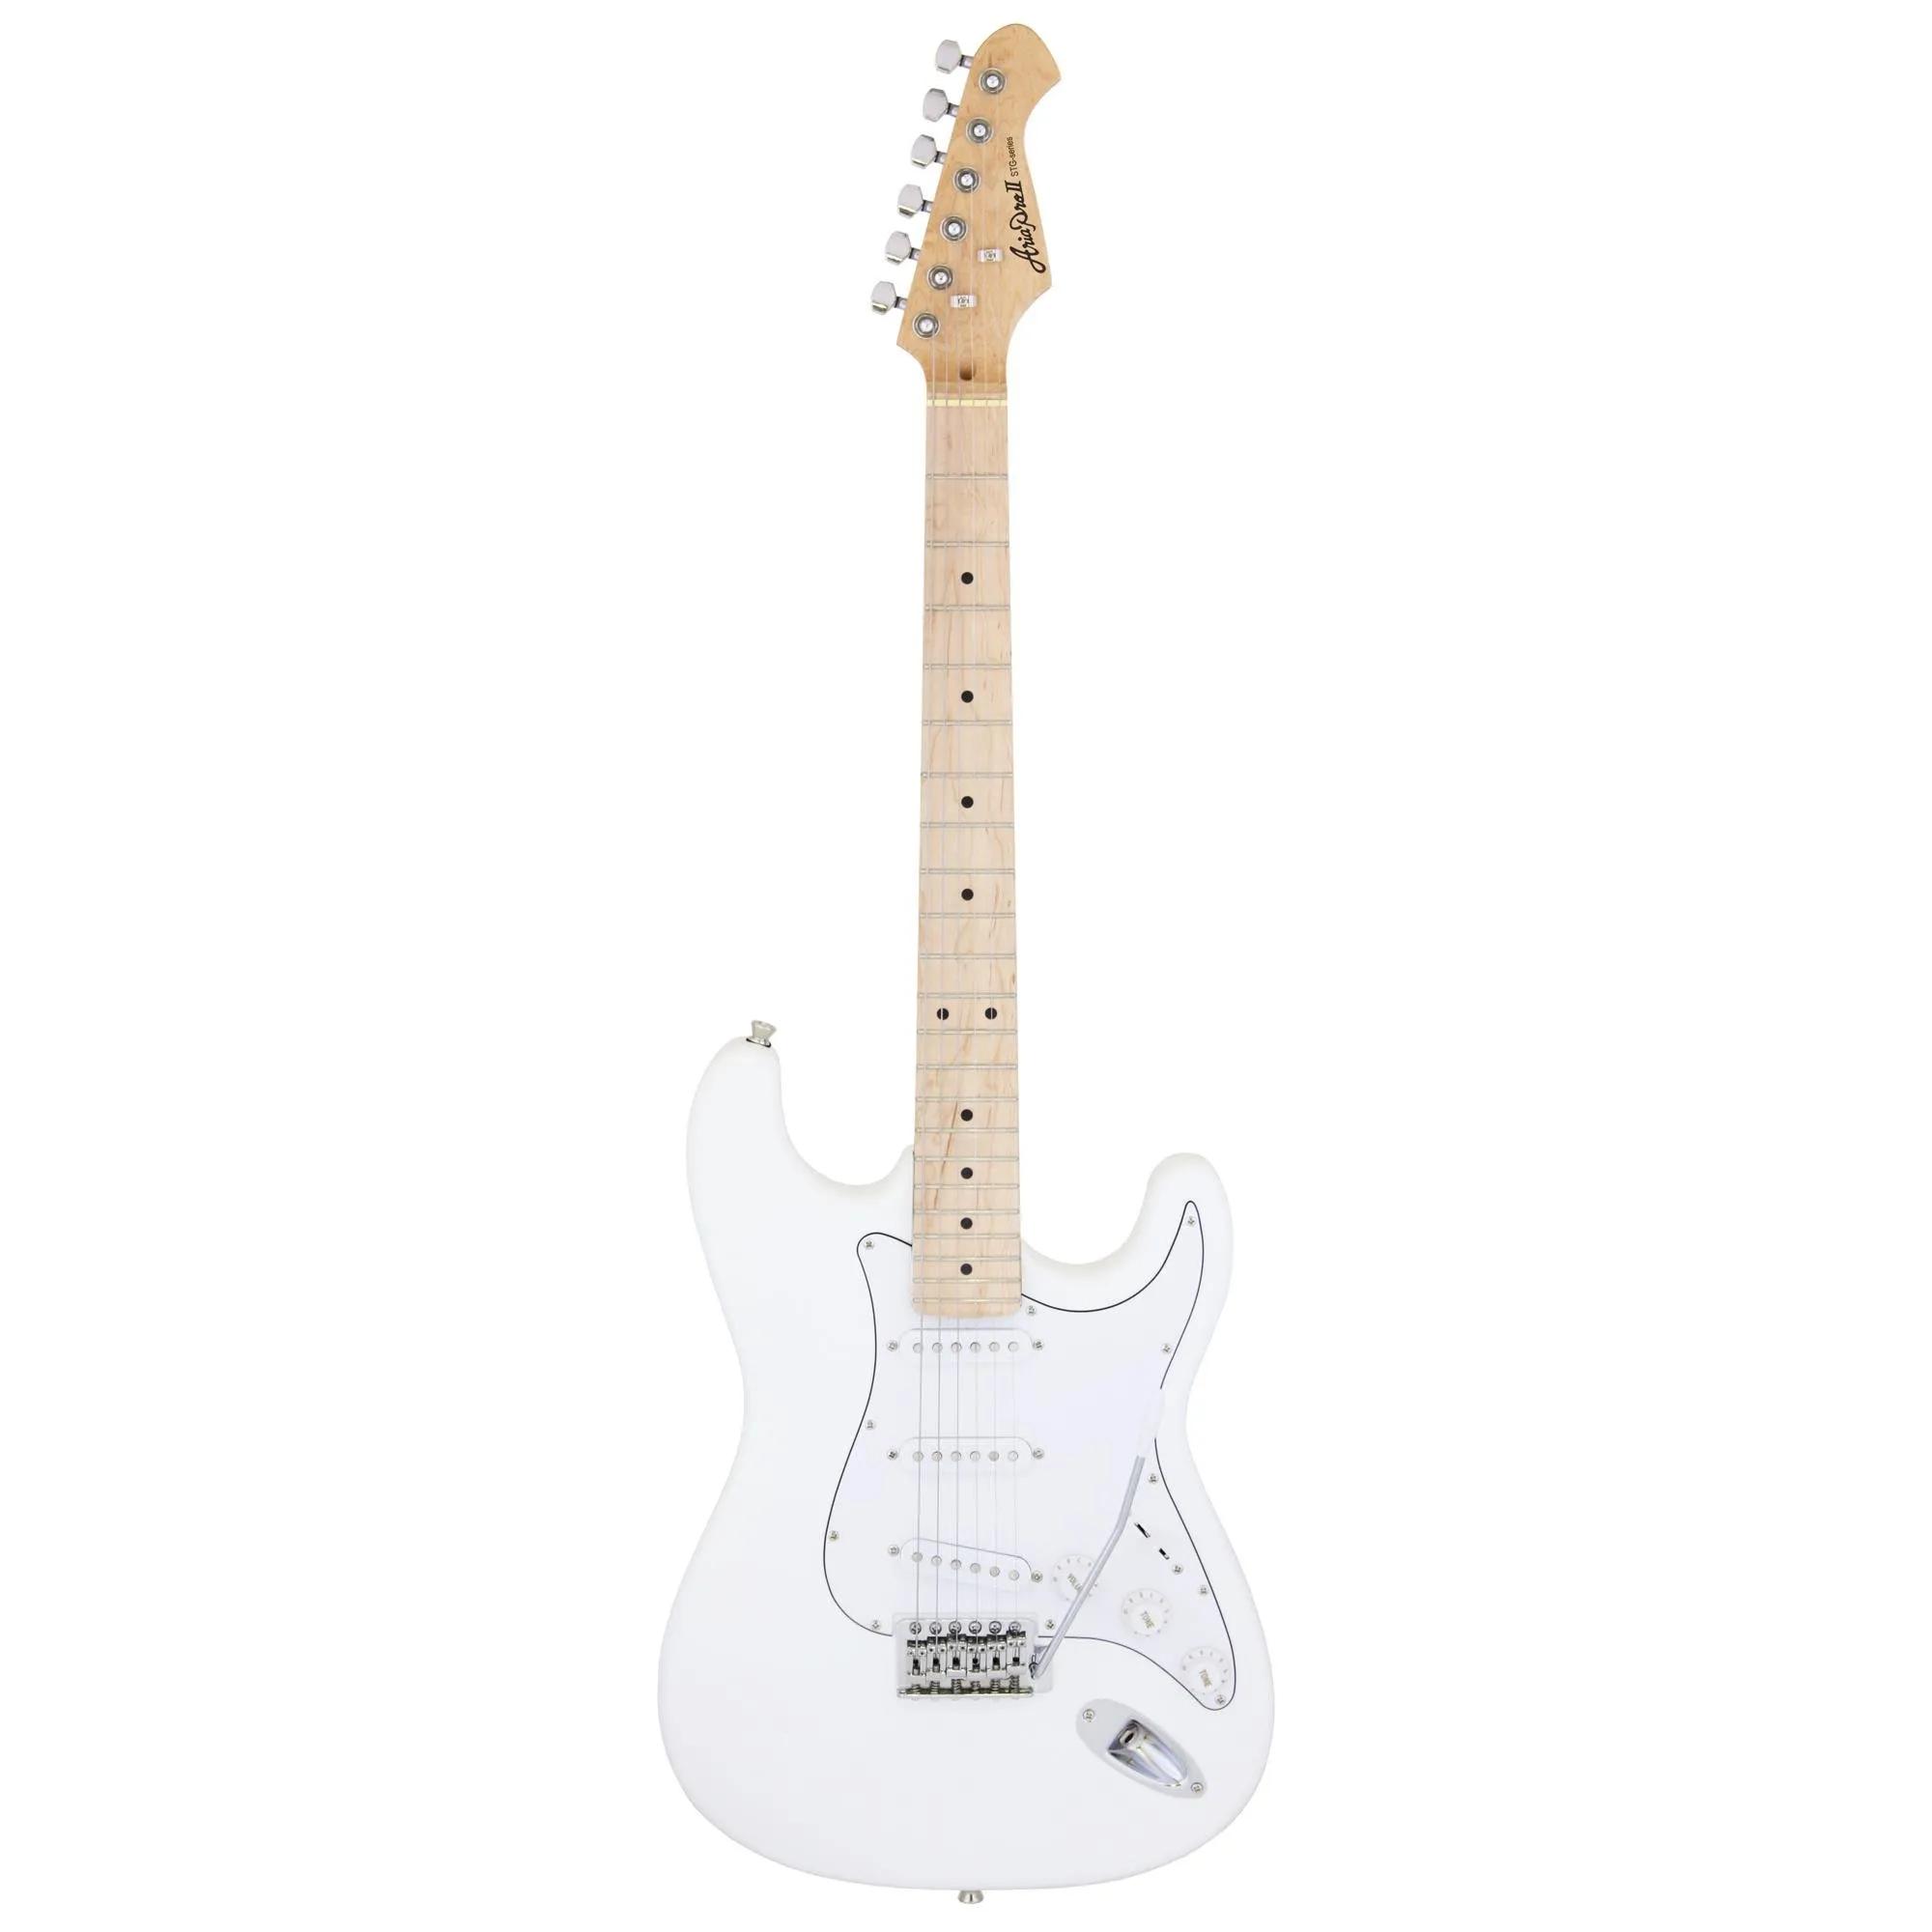 Guitarra Aria Pro II STG-003/M White por 1.074,00 à vista no boleto/pix ou parcele em até 12x sem juros. Compre na loja Mundomax!